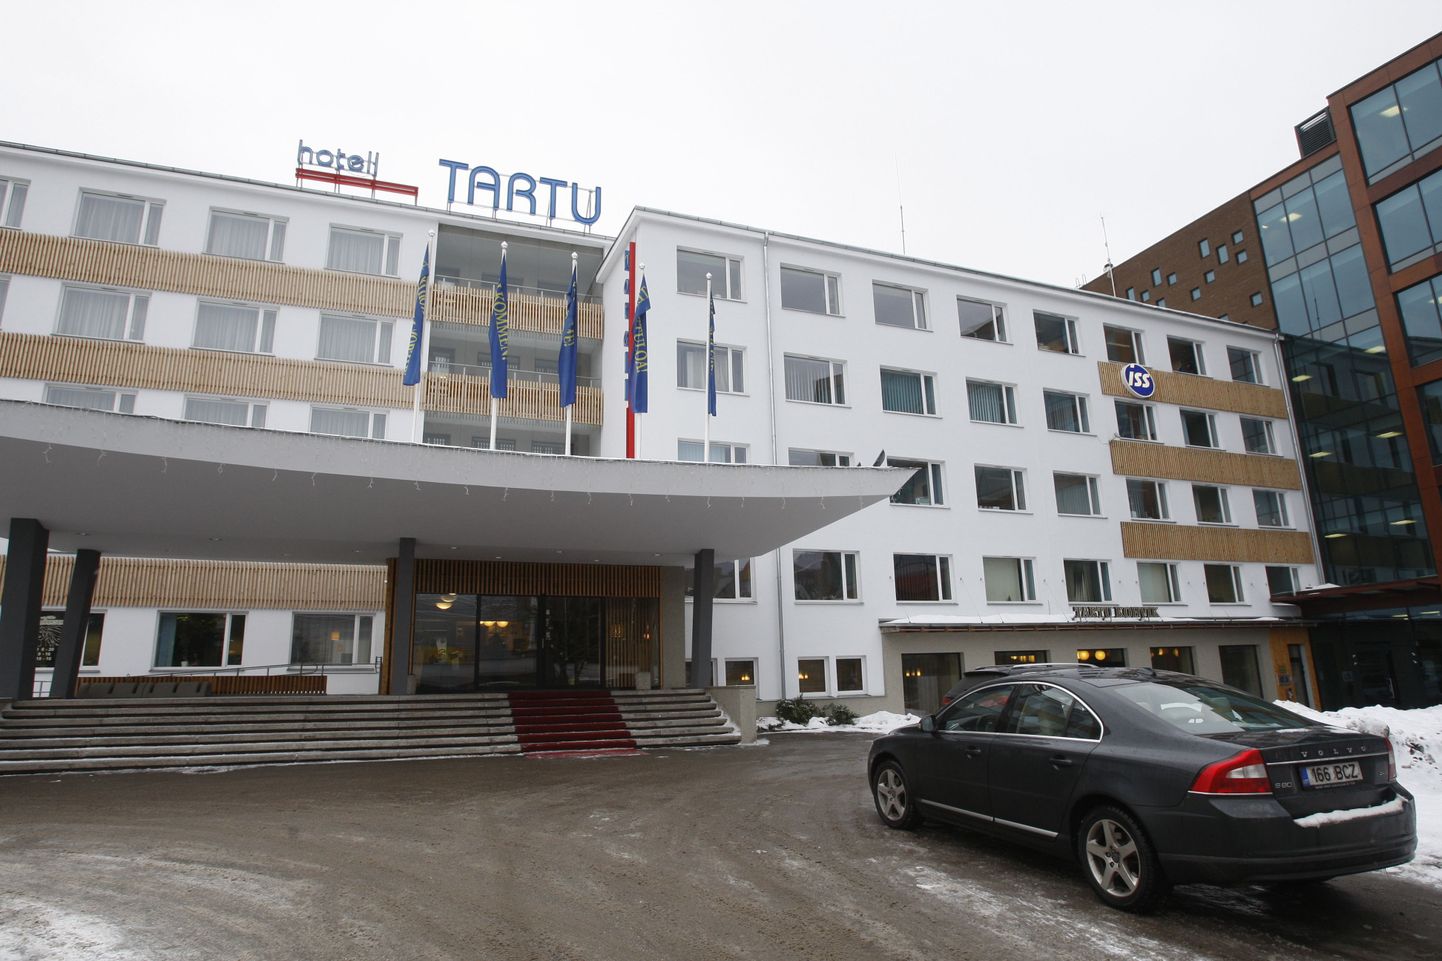 Hotell Tartu.